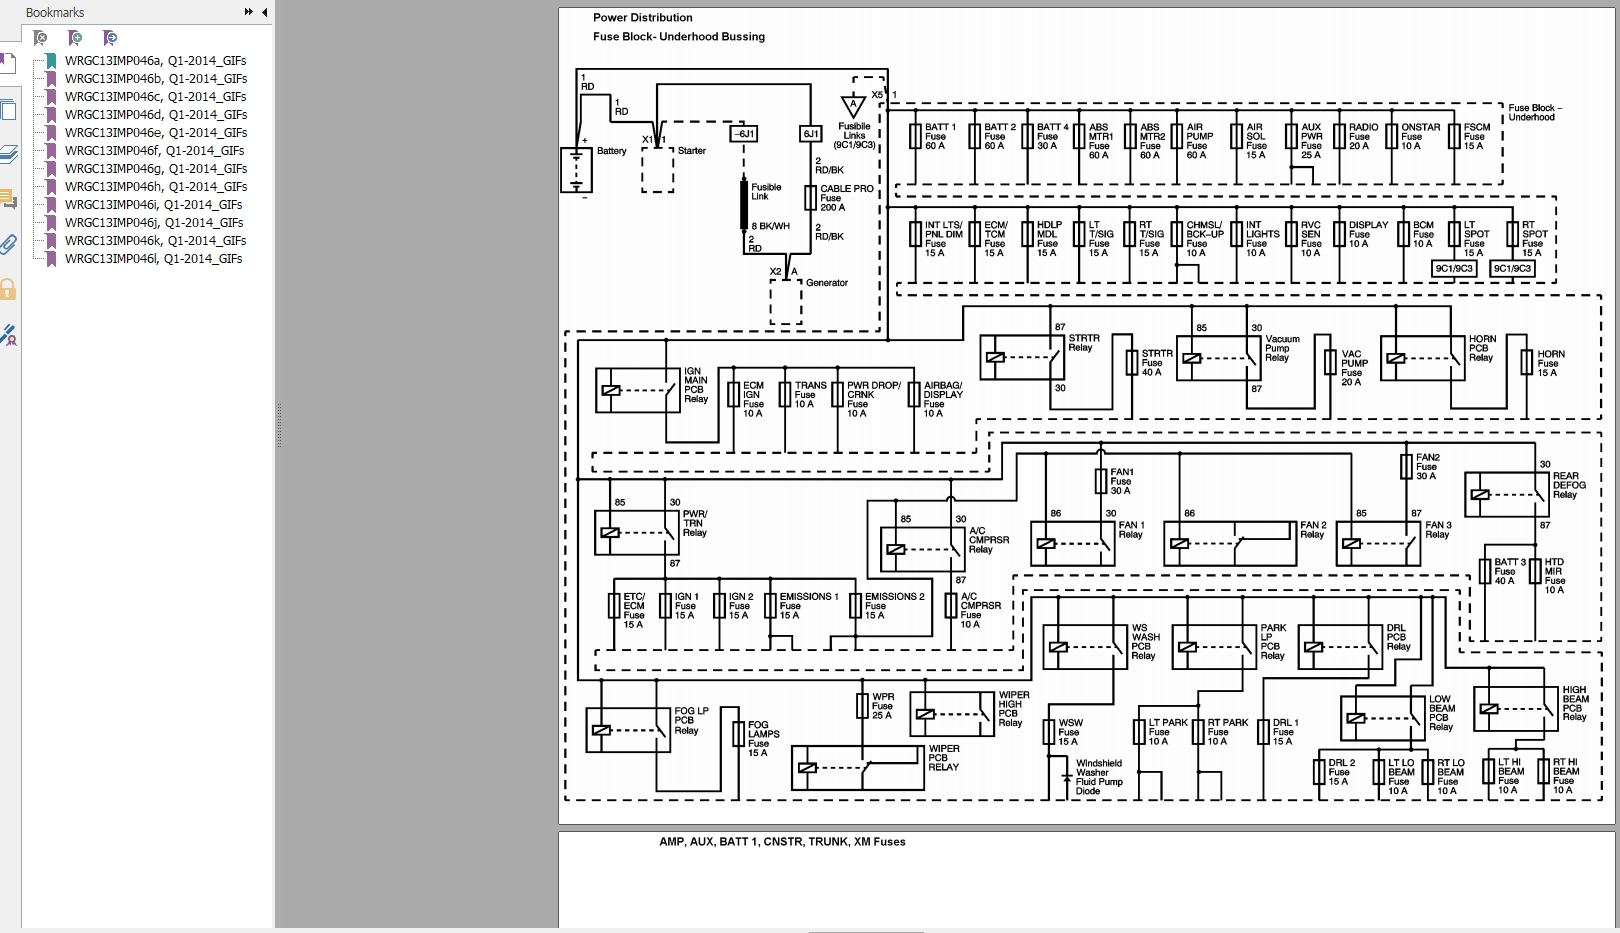 Chervolet Impala 2013 Body Control & Wiring Diagram_EN | Auto Repair